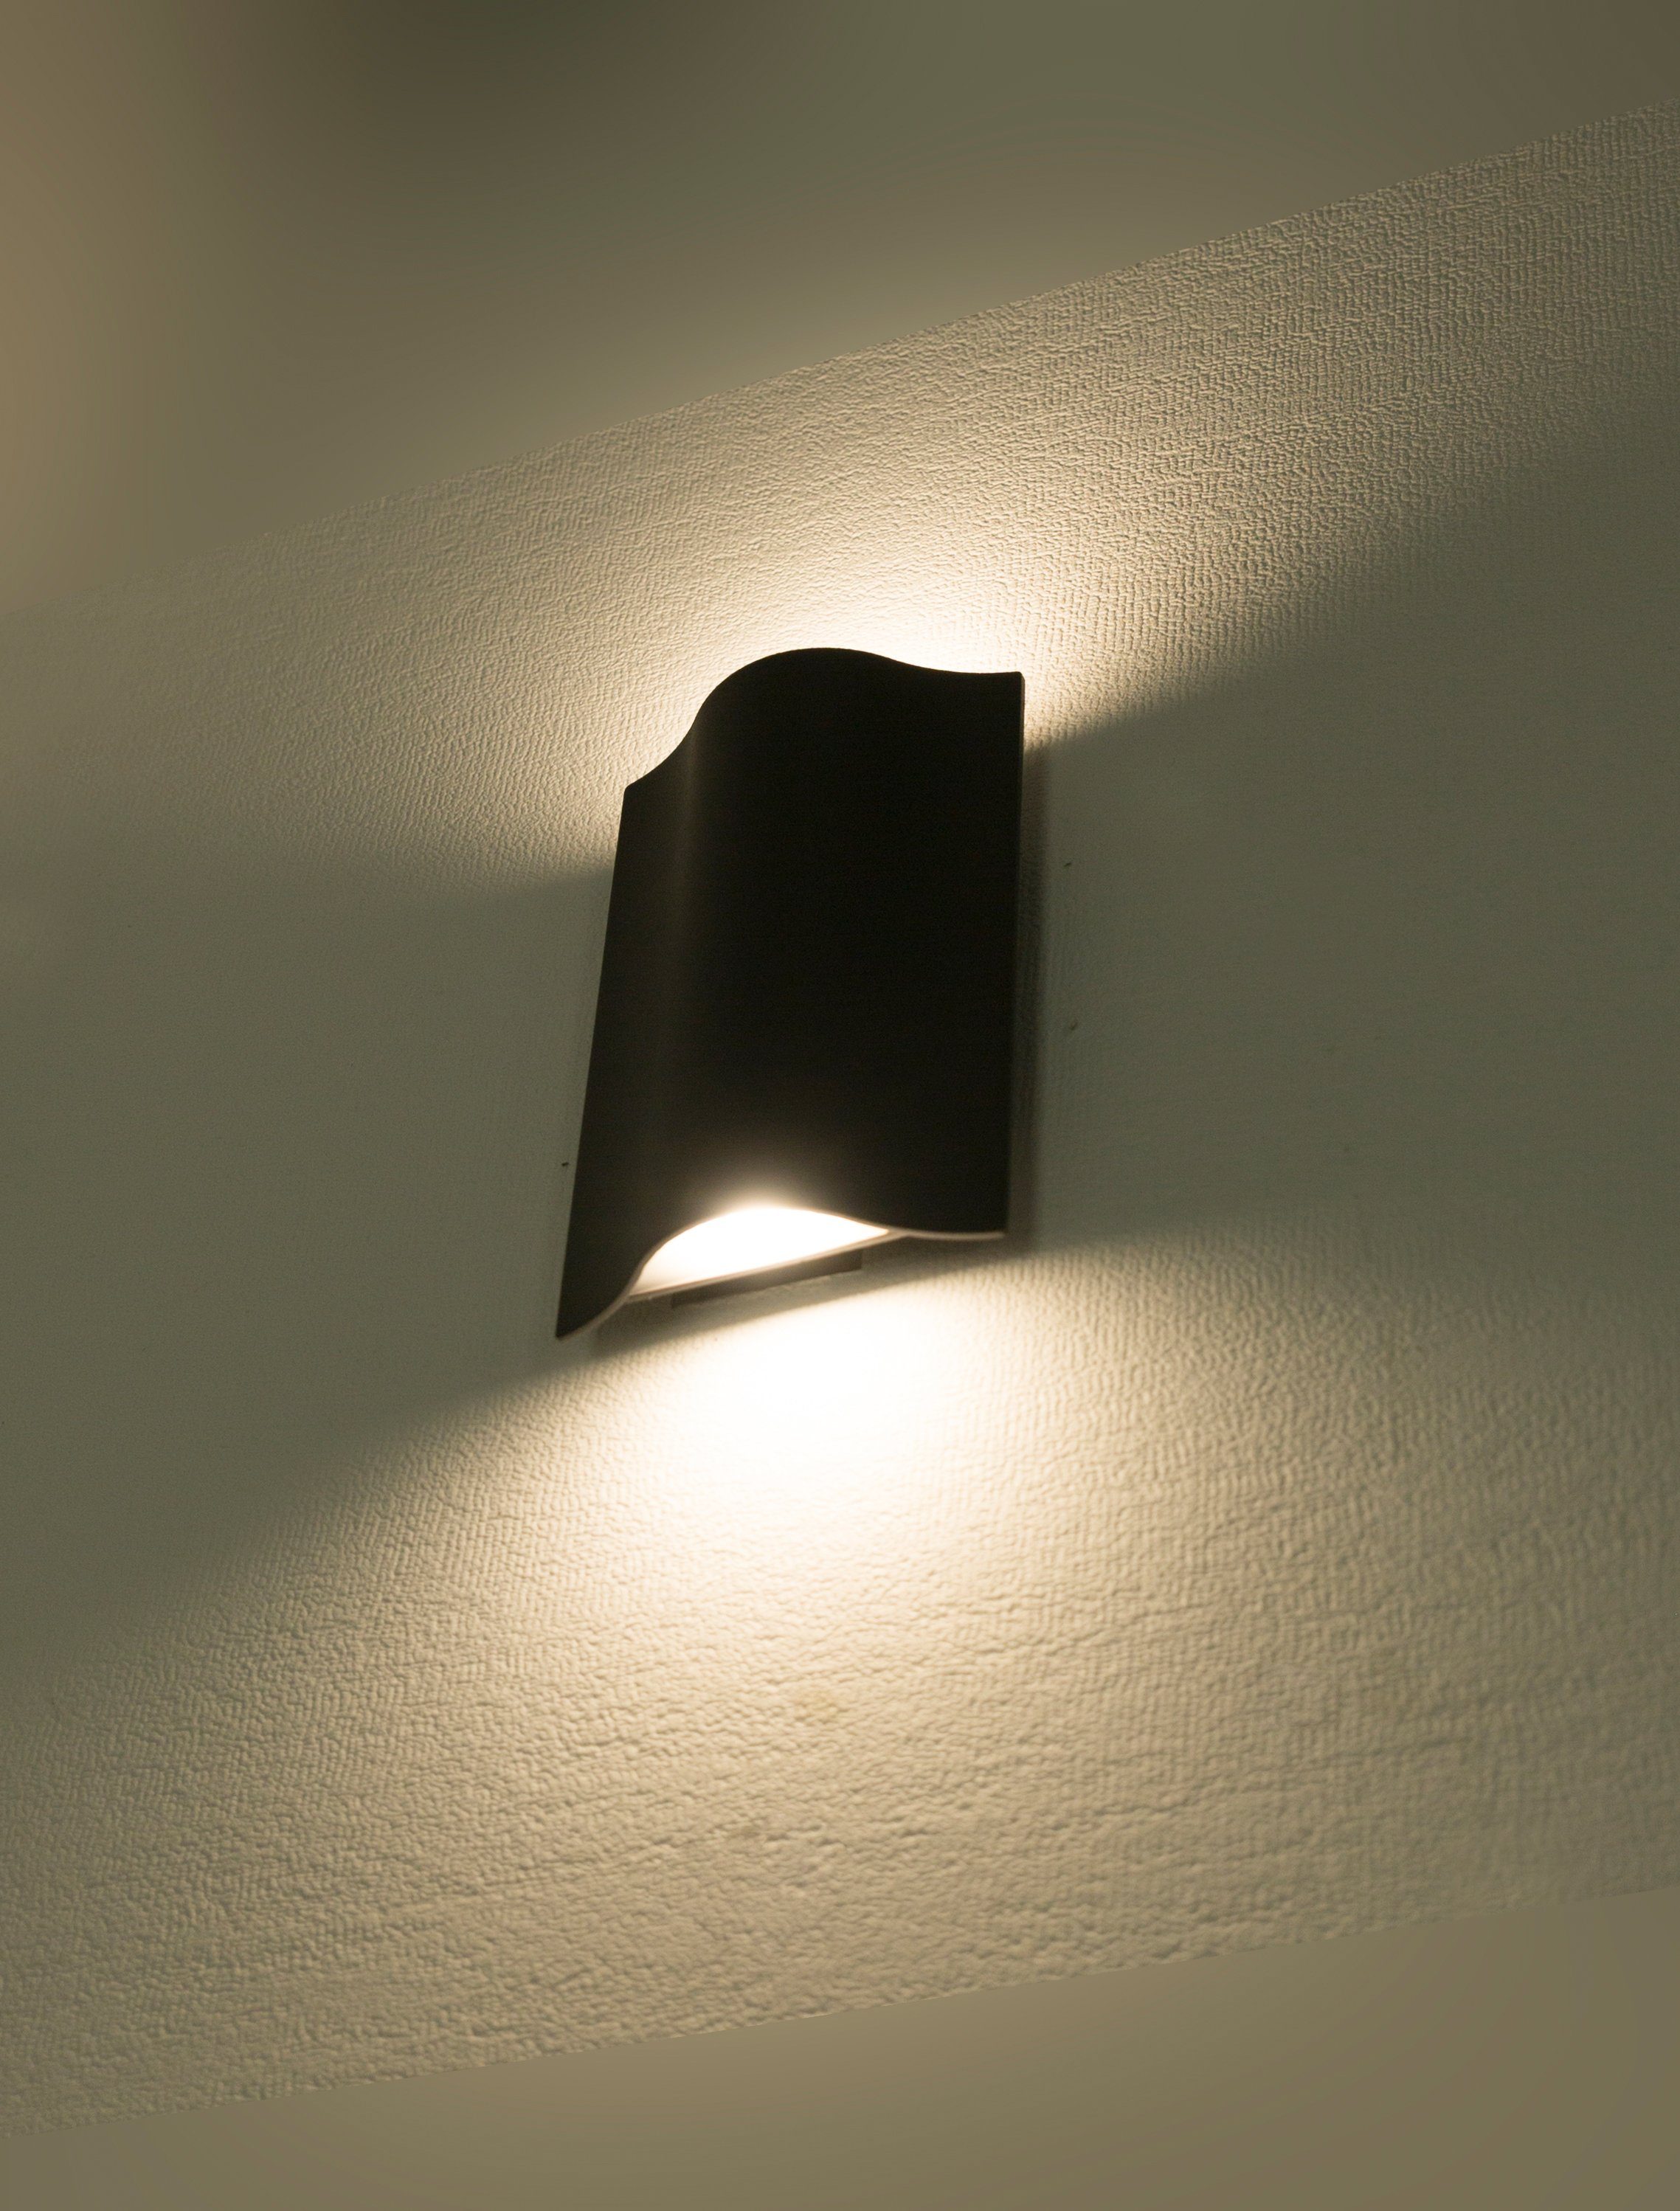 integriert, unten und Warmweiß, Wandlampe, HEITRONIC fest Lichtaustritt LED Laola, Außenlampe, Wandleuchte LED oben